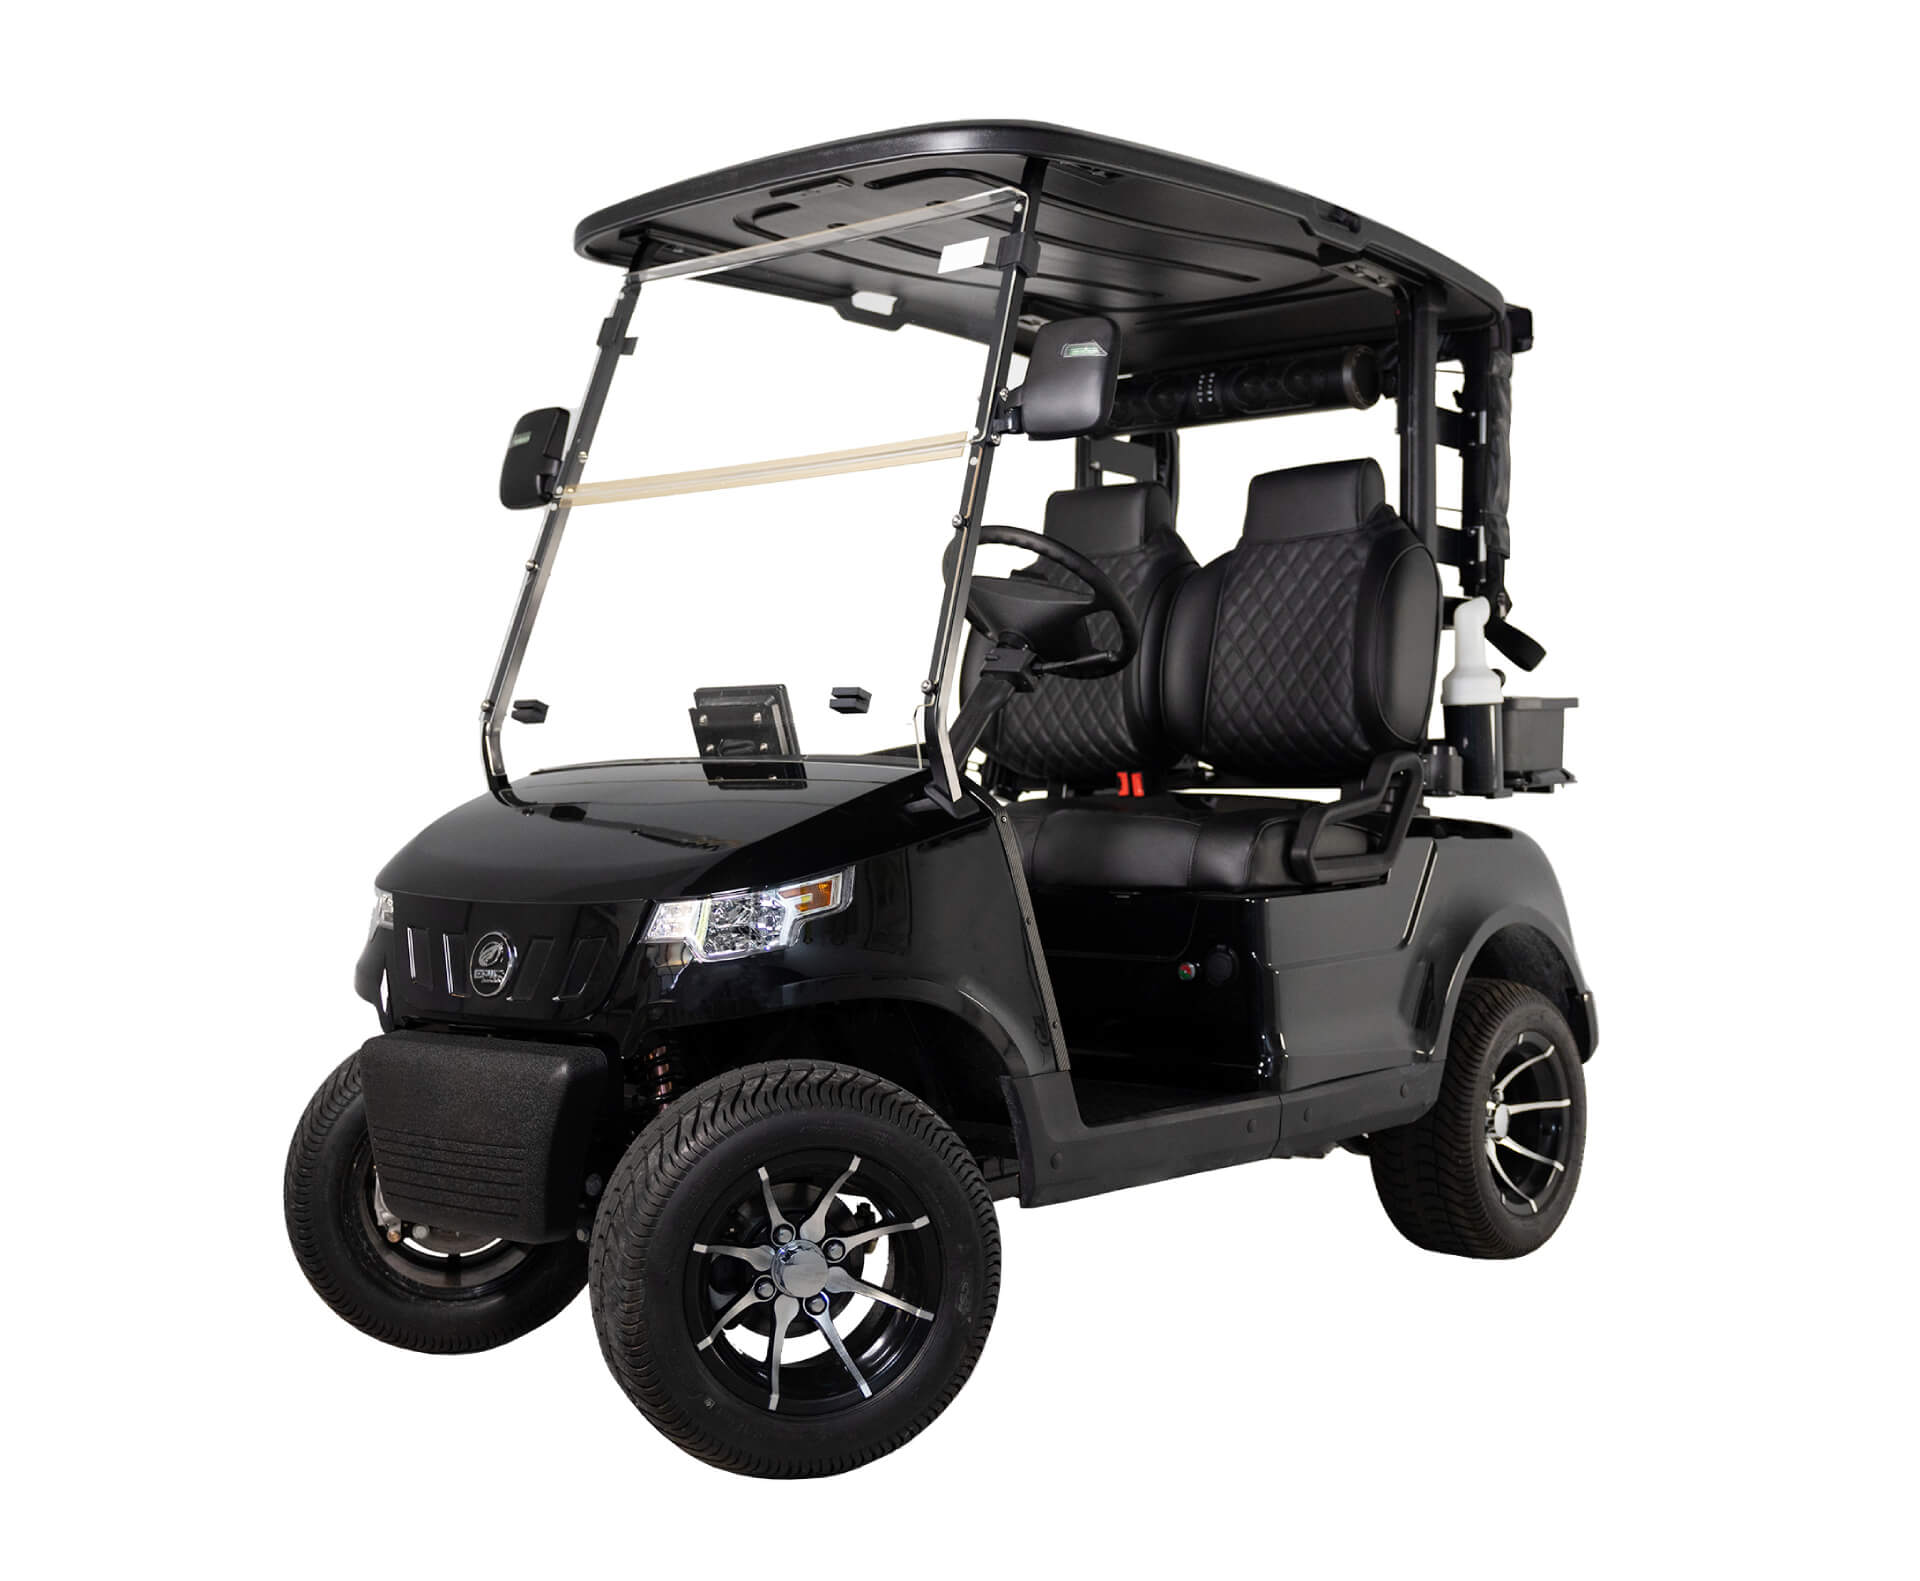 Street Legal Golf Cart Rental